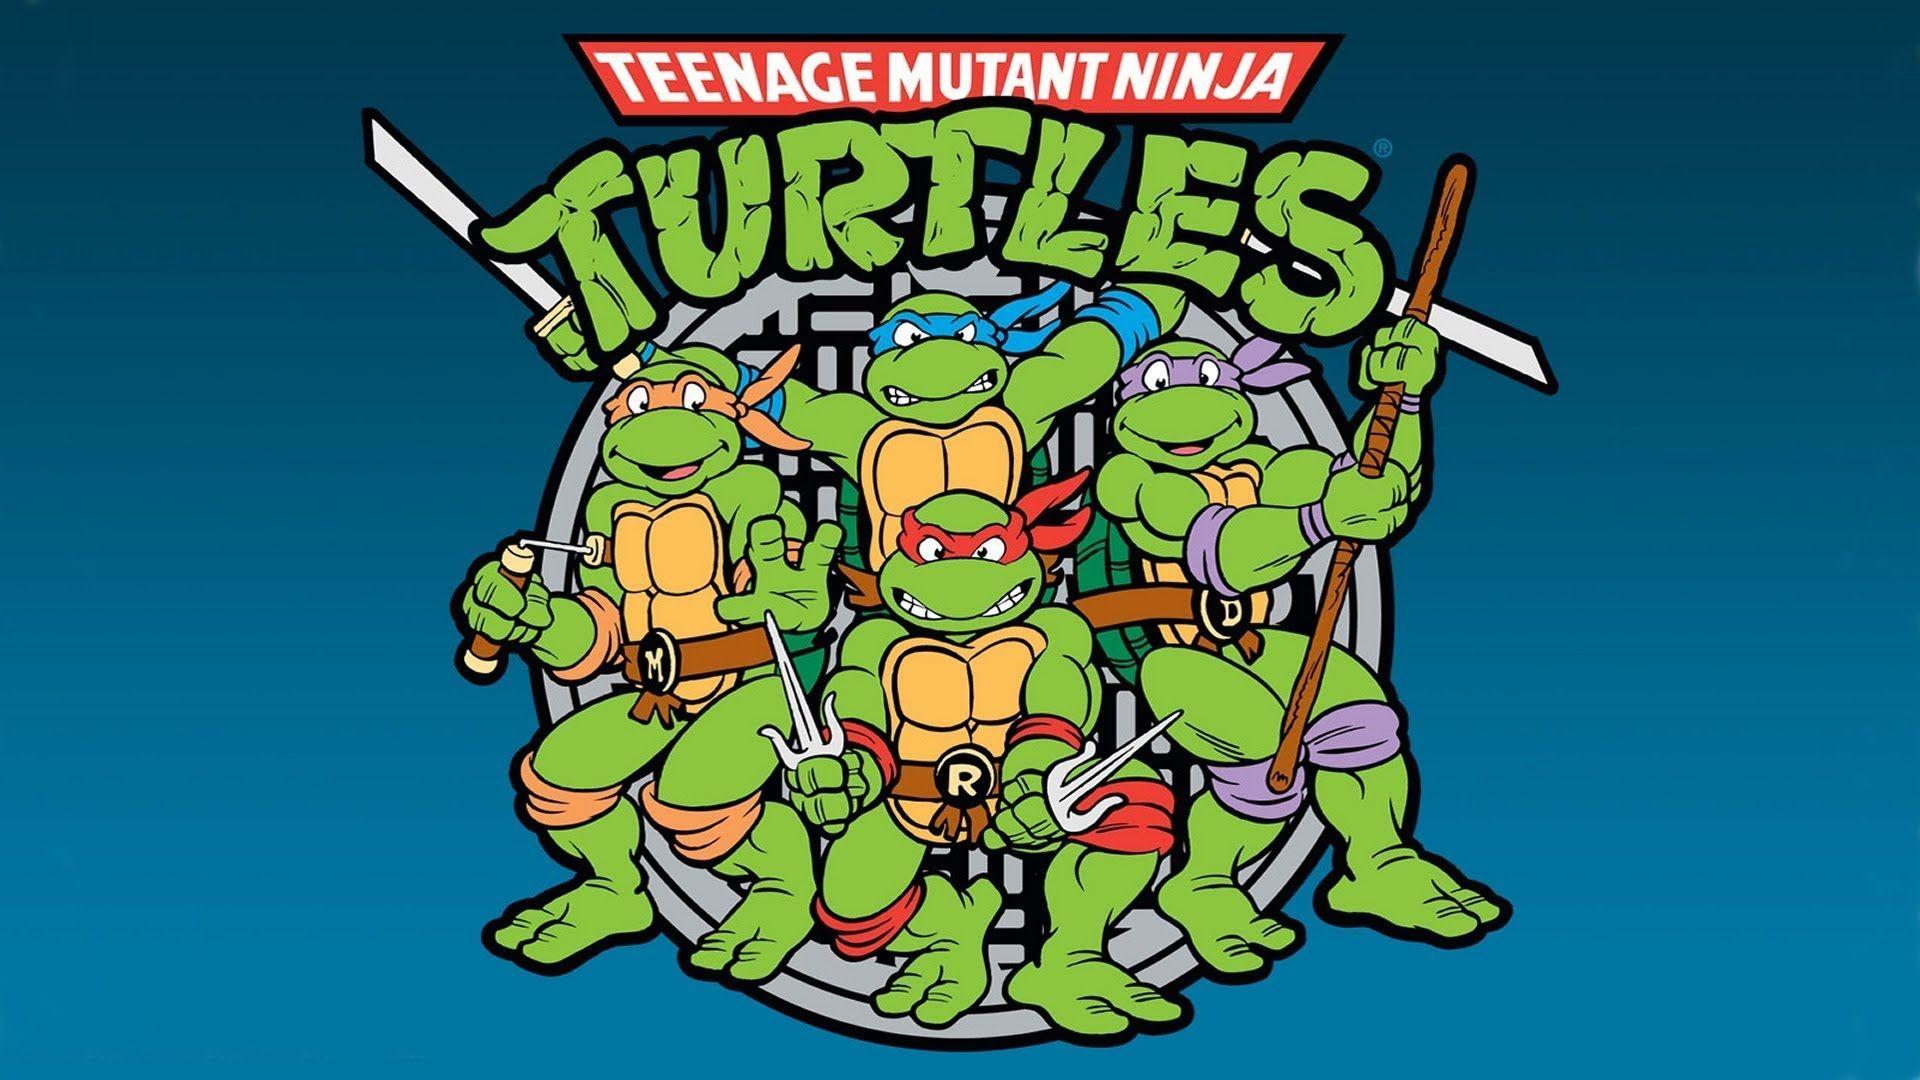 1980s Teenage Mutant Ninja Turtles Wallpaper Free